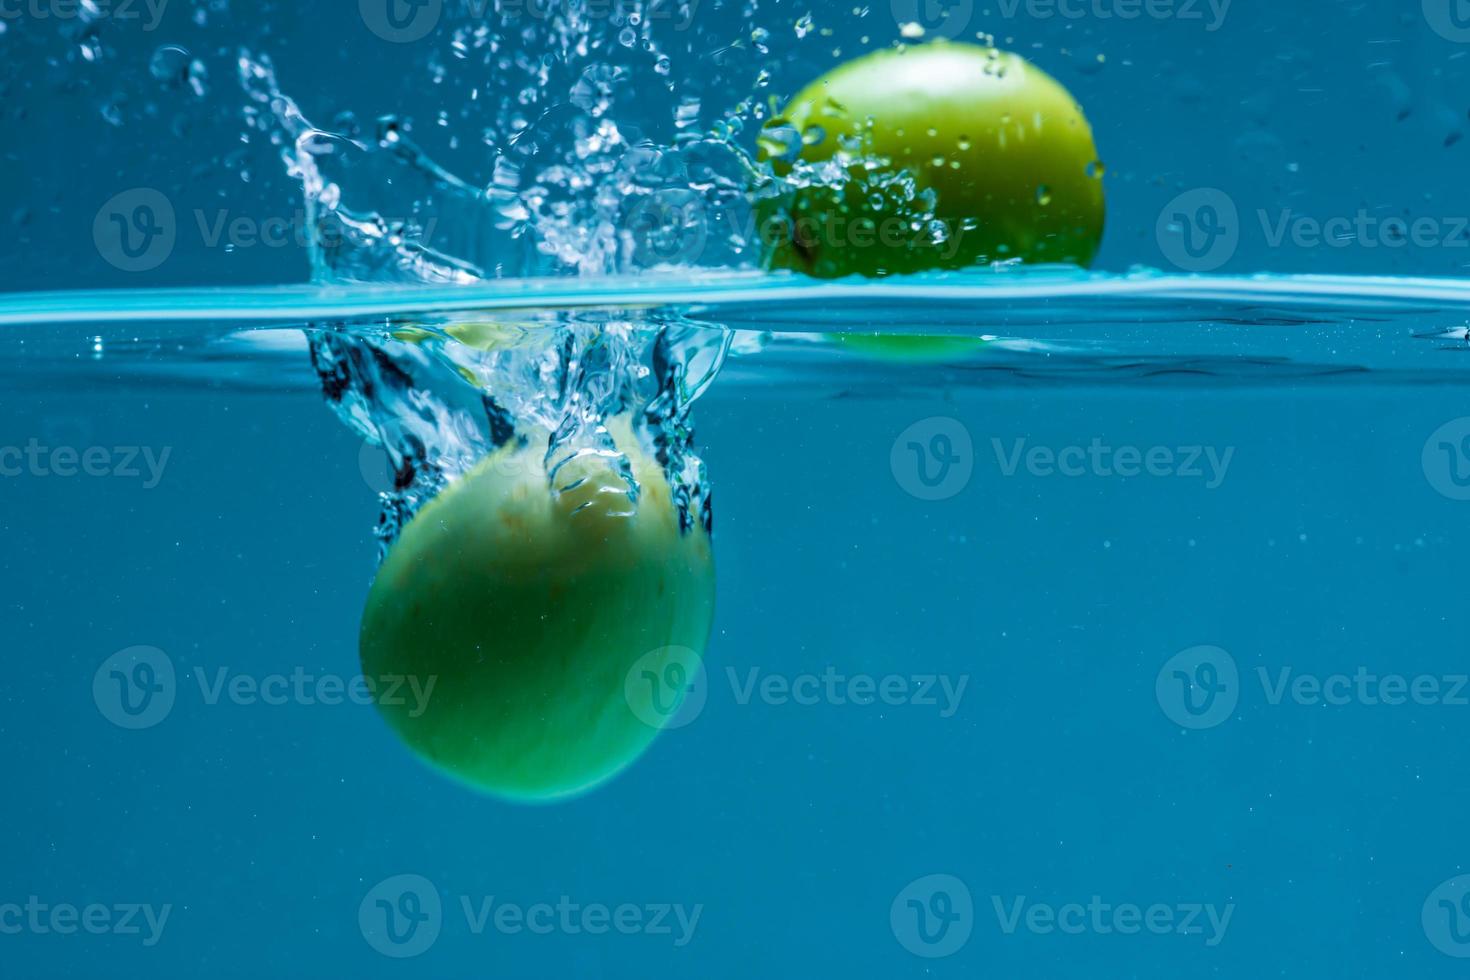 la bola de azufaifo por el agua foto